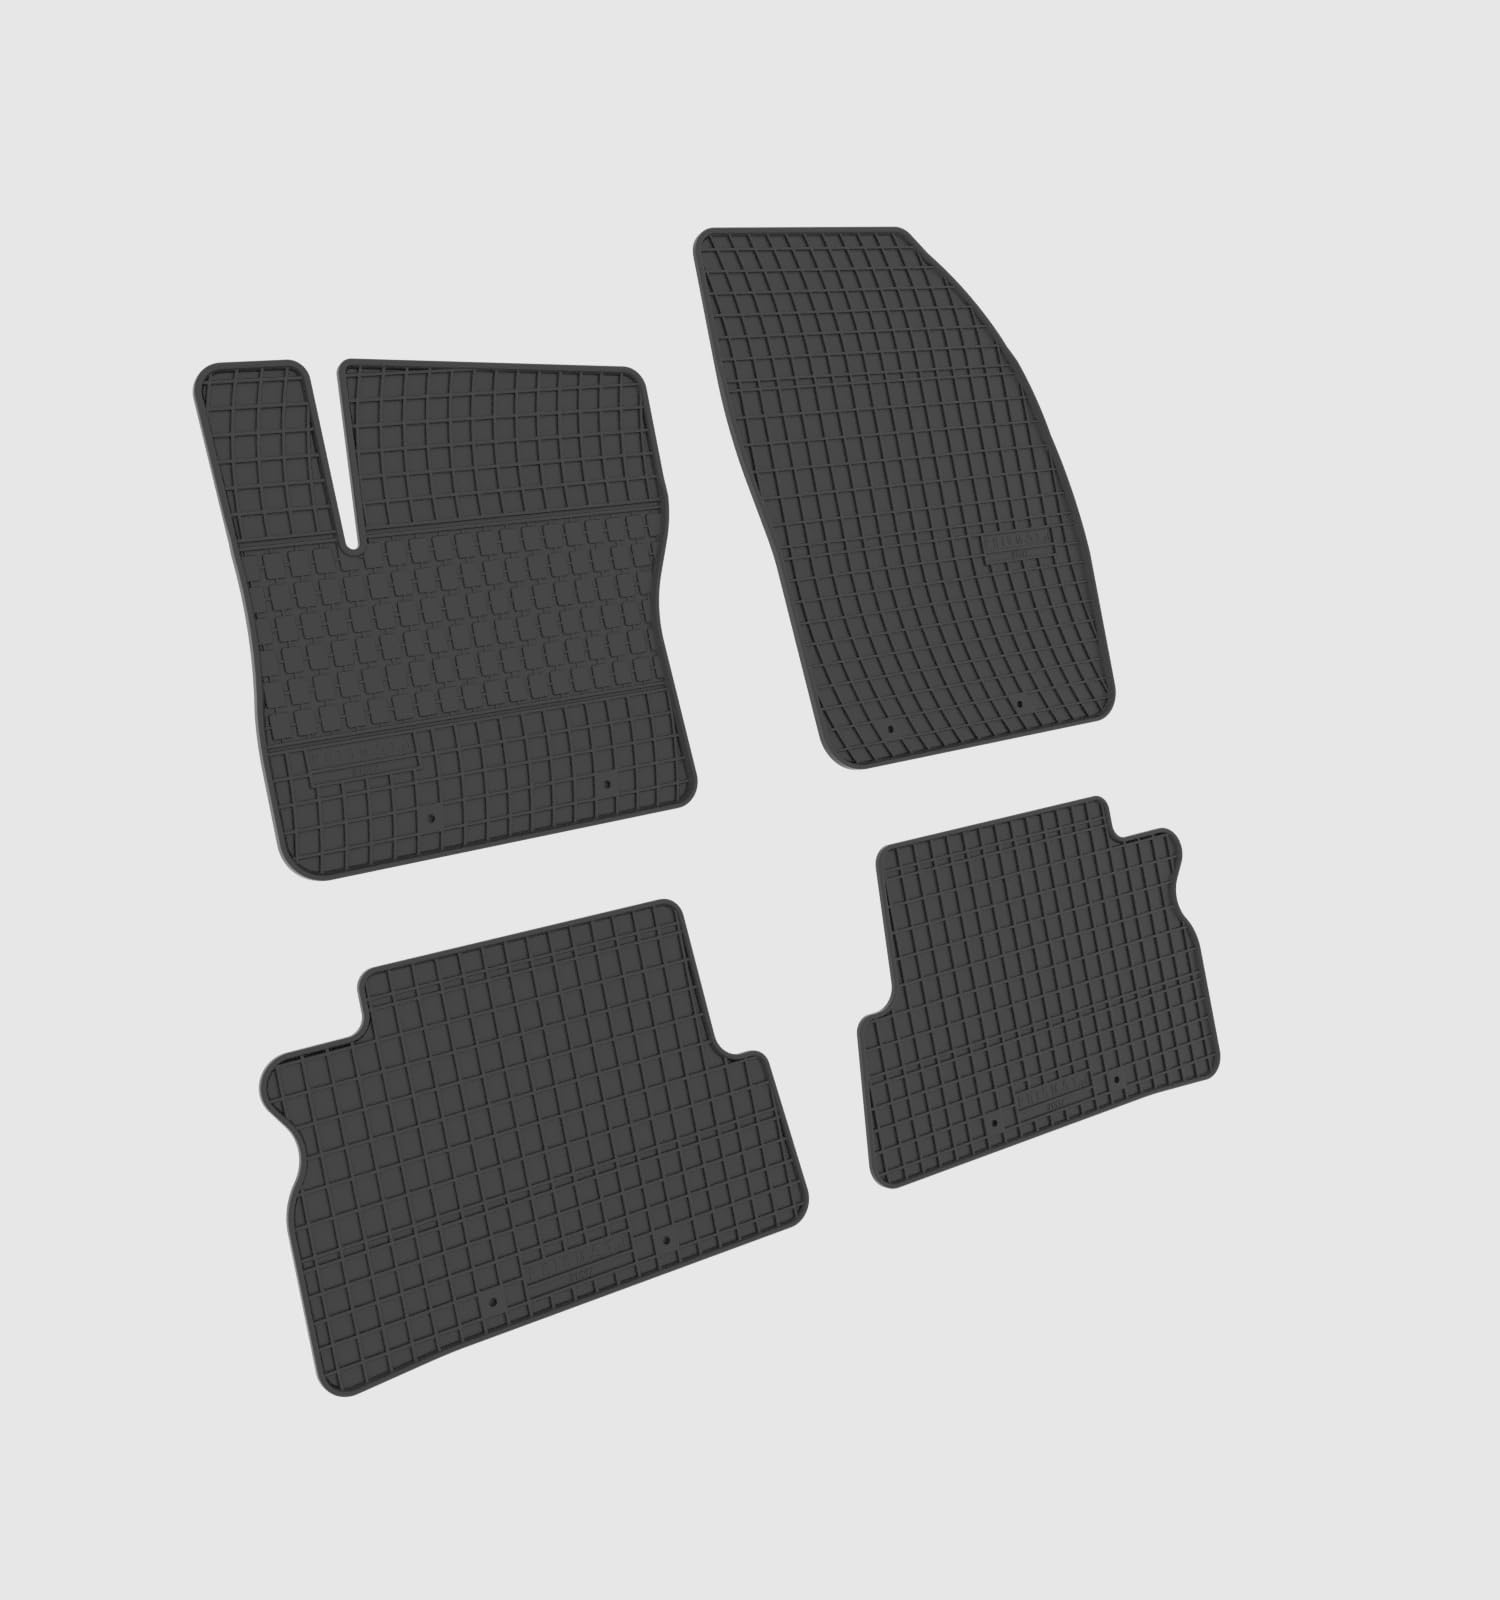 Gummimatten kompatibel mit Ford C-Max Focus C-Max ab Bj. 03 100% Passgenau Gummi-Fußmatten von All4You